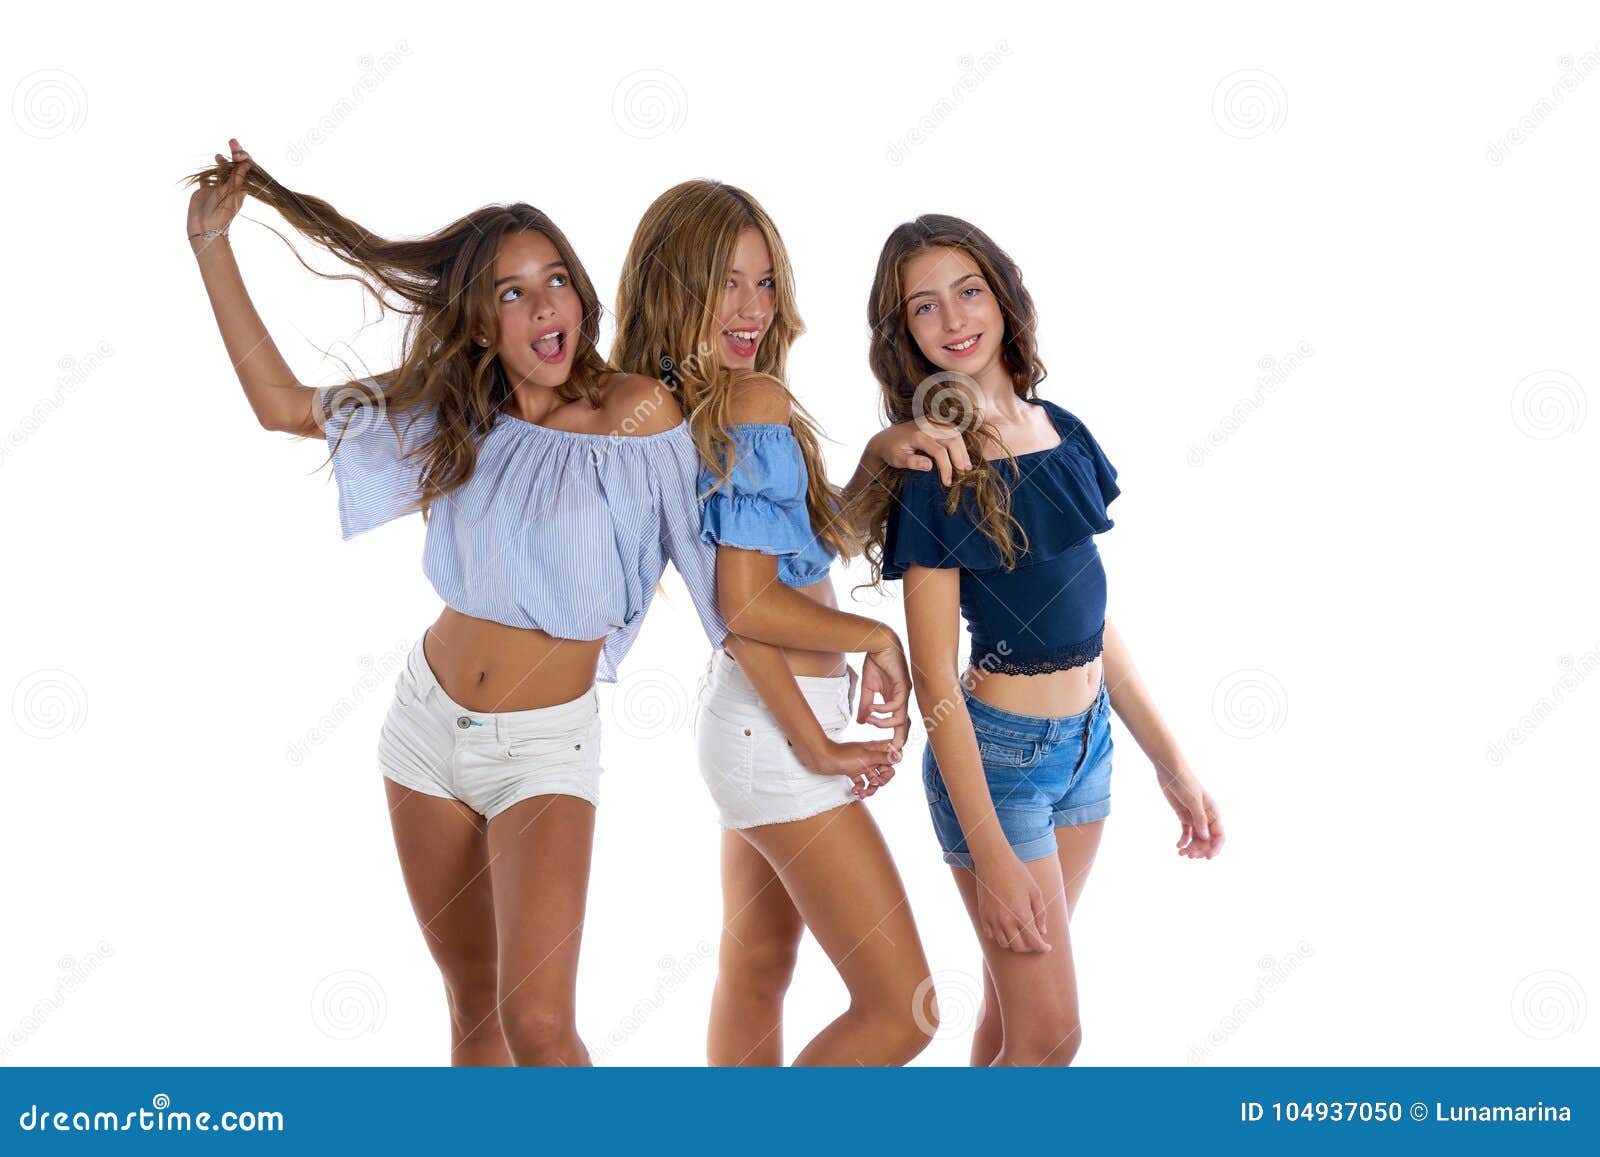 Girls Models Teen Fotos